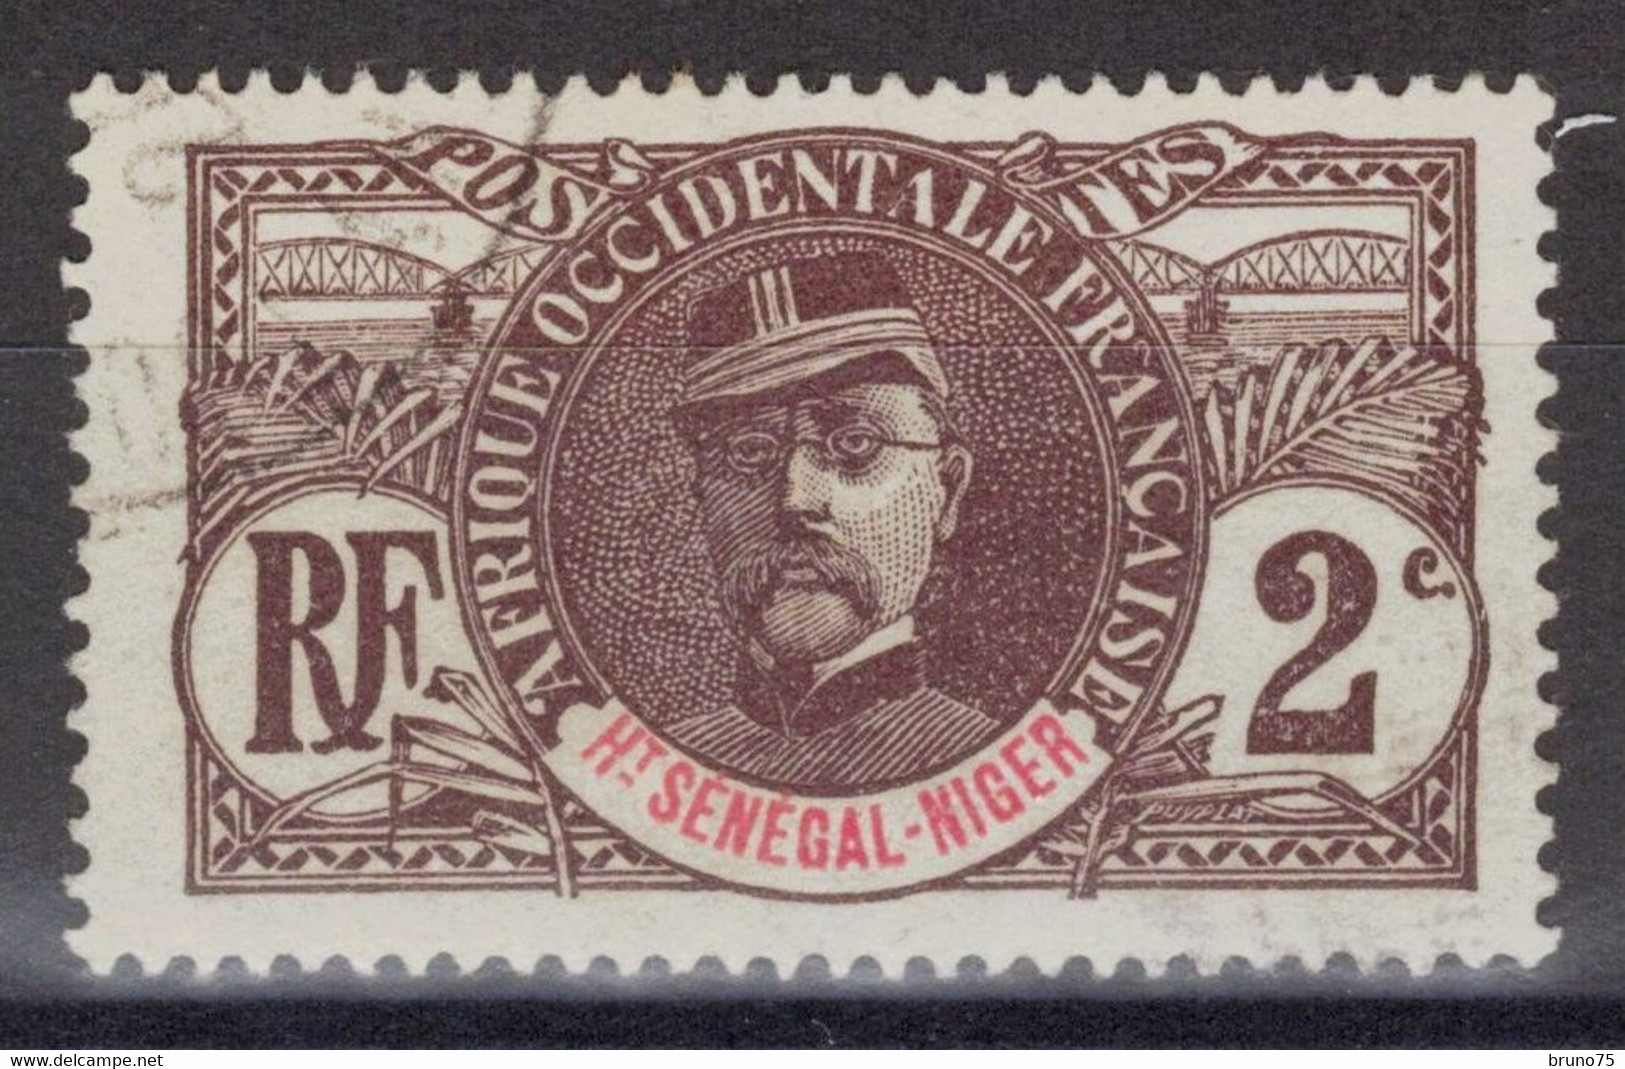 Haut-Sénégal Et Niger - YT 2 Oblitéré - 1906 - Gebruikt